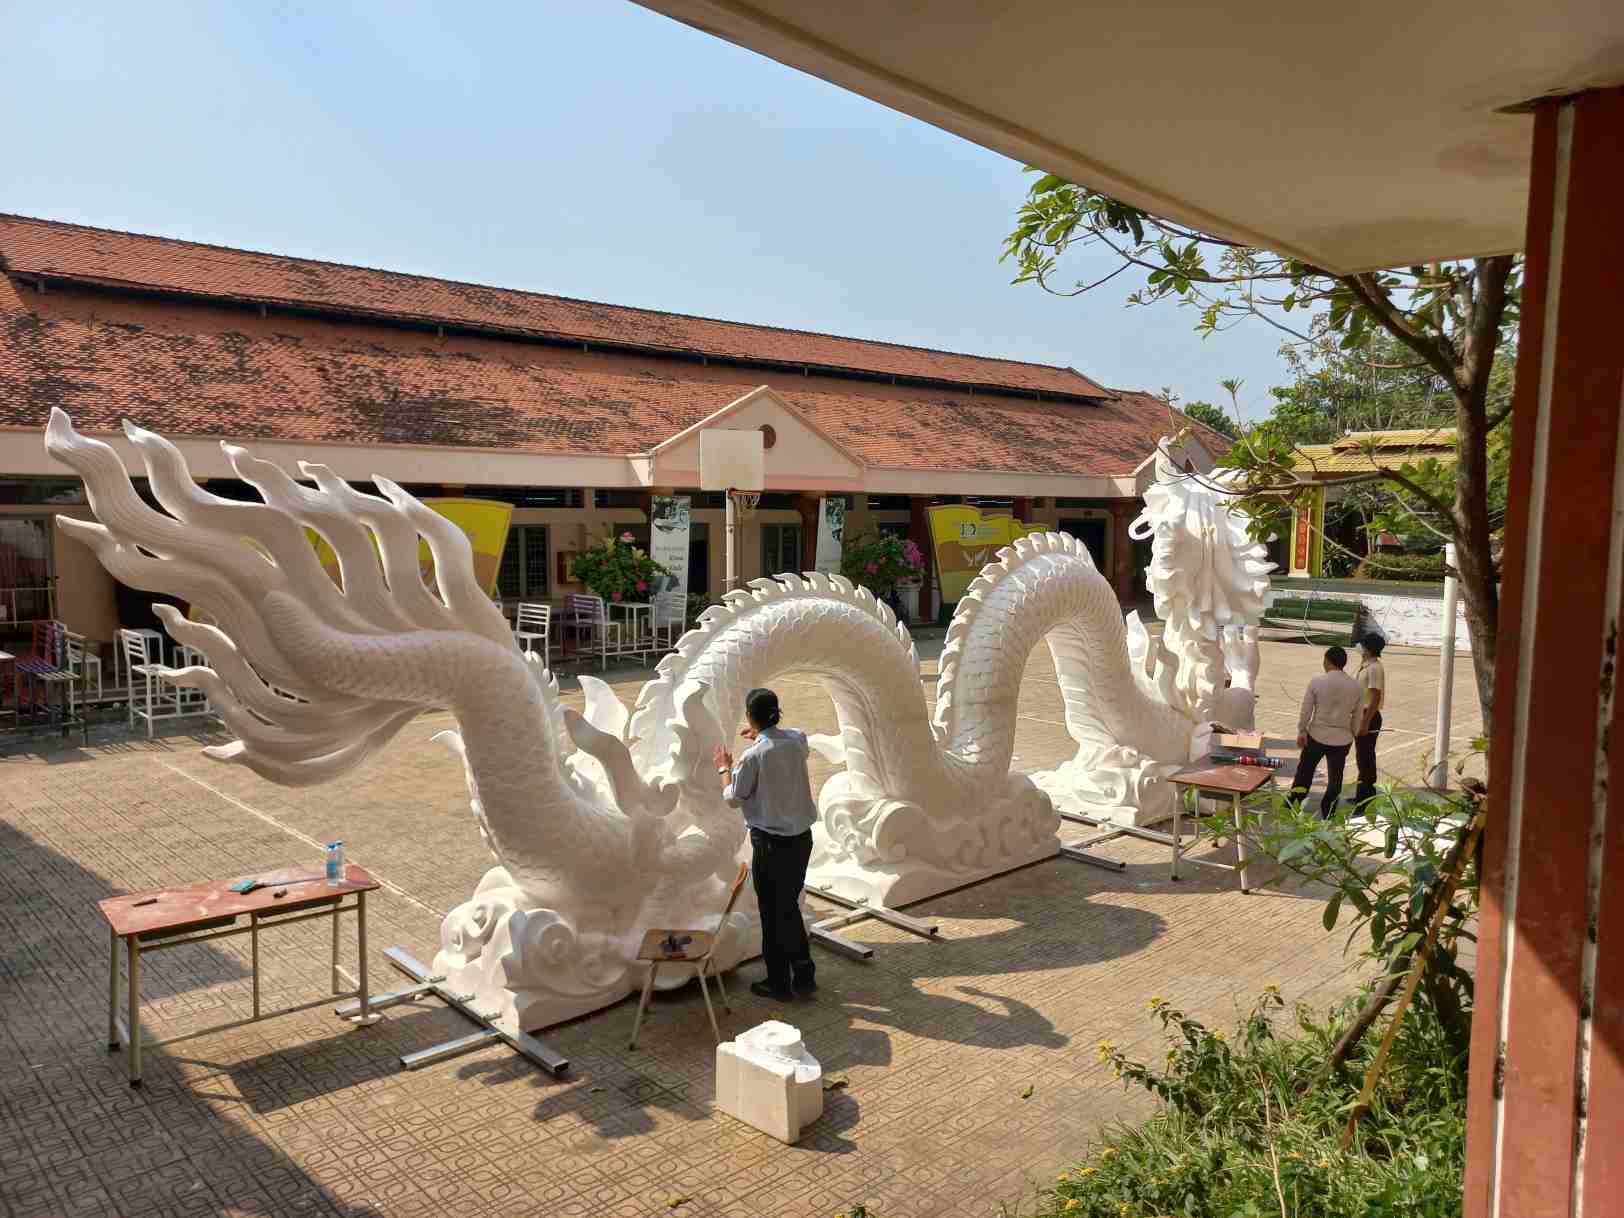 Đây là hình ảnh linh vật rồng đã hoàn thành phần tạo hình ở sân trường Trường Trung cấp Mỹ thuật - Văn hóa Bình Dương (phường Phú Cường, thành phố Thủ Dầu Một, tỉnh Bình Dương).